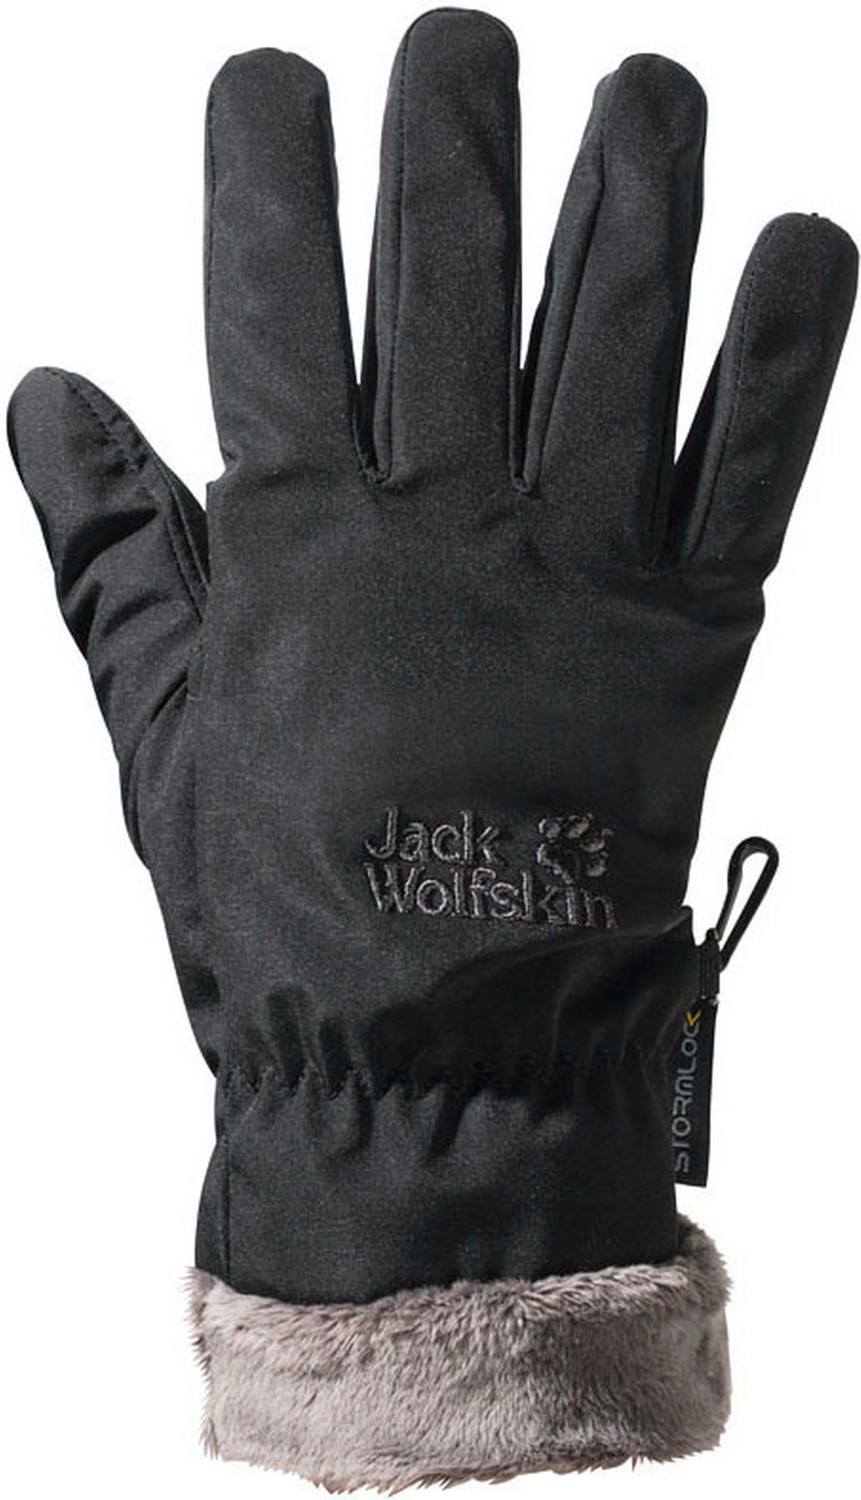 Jack Wolfskin Stormlock Highloft Preisvergleich Glove bei | ab Women € black 39,99